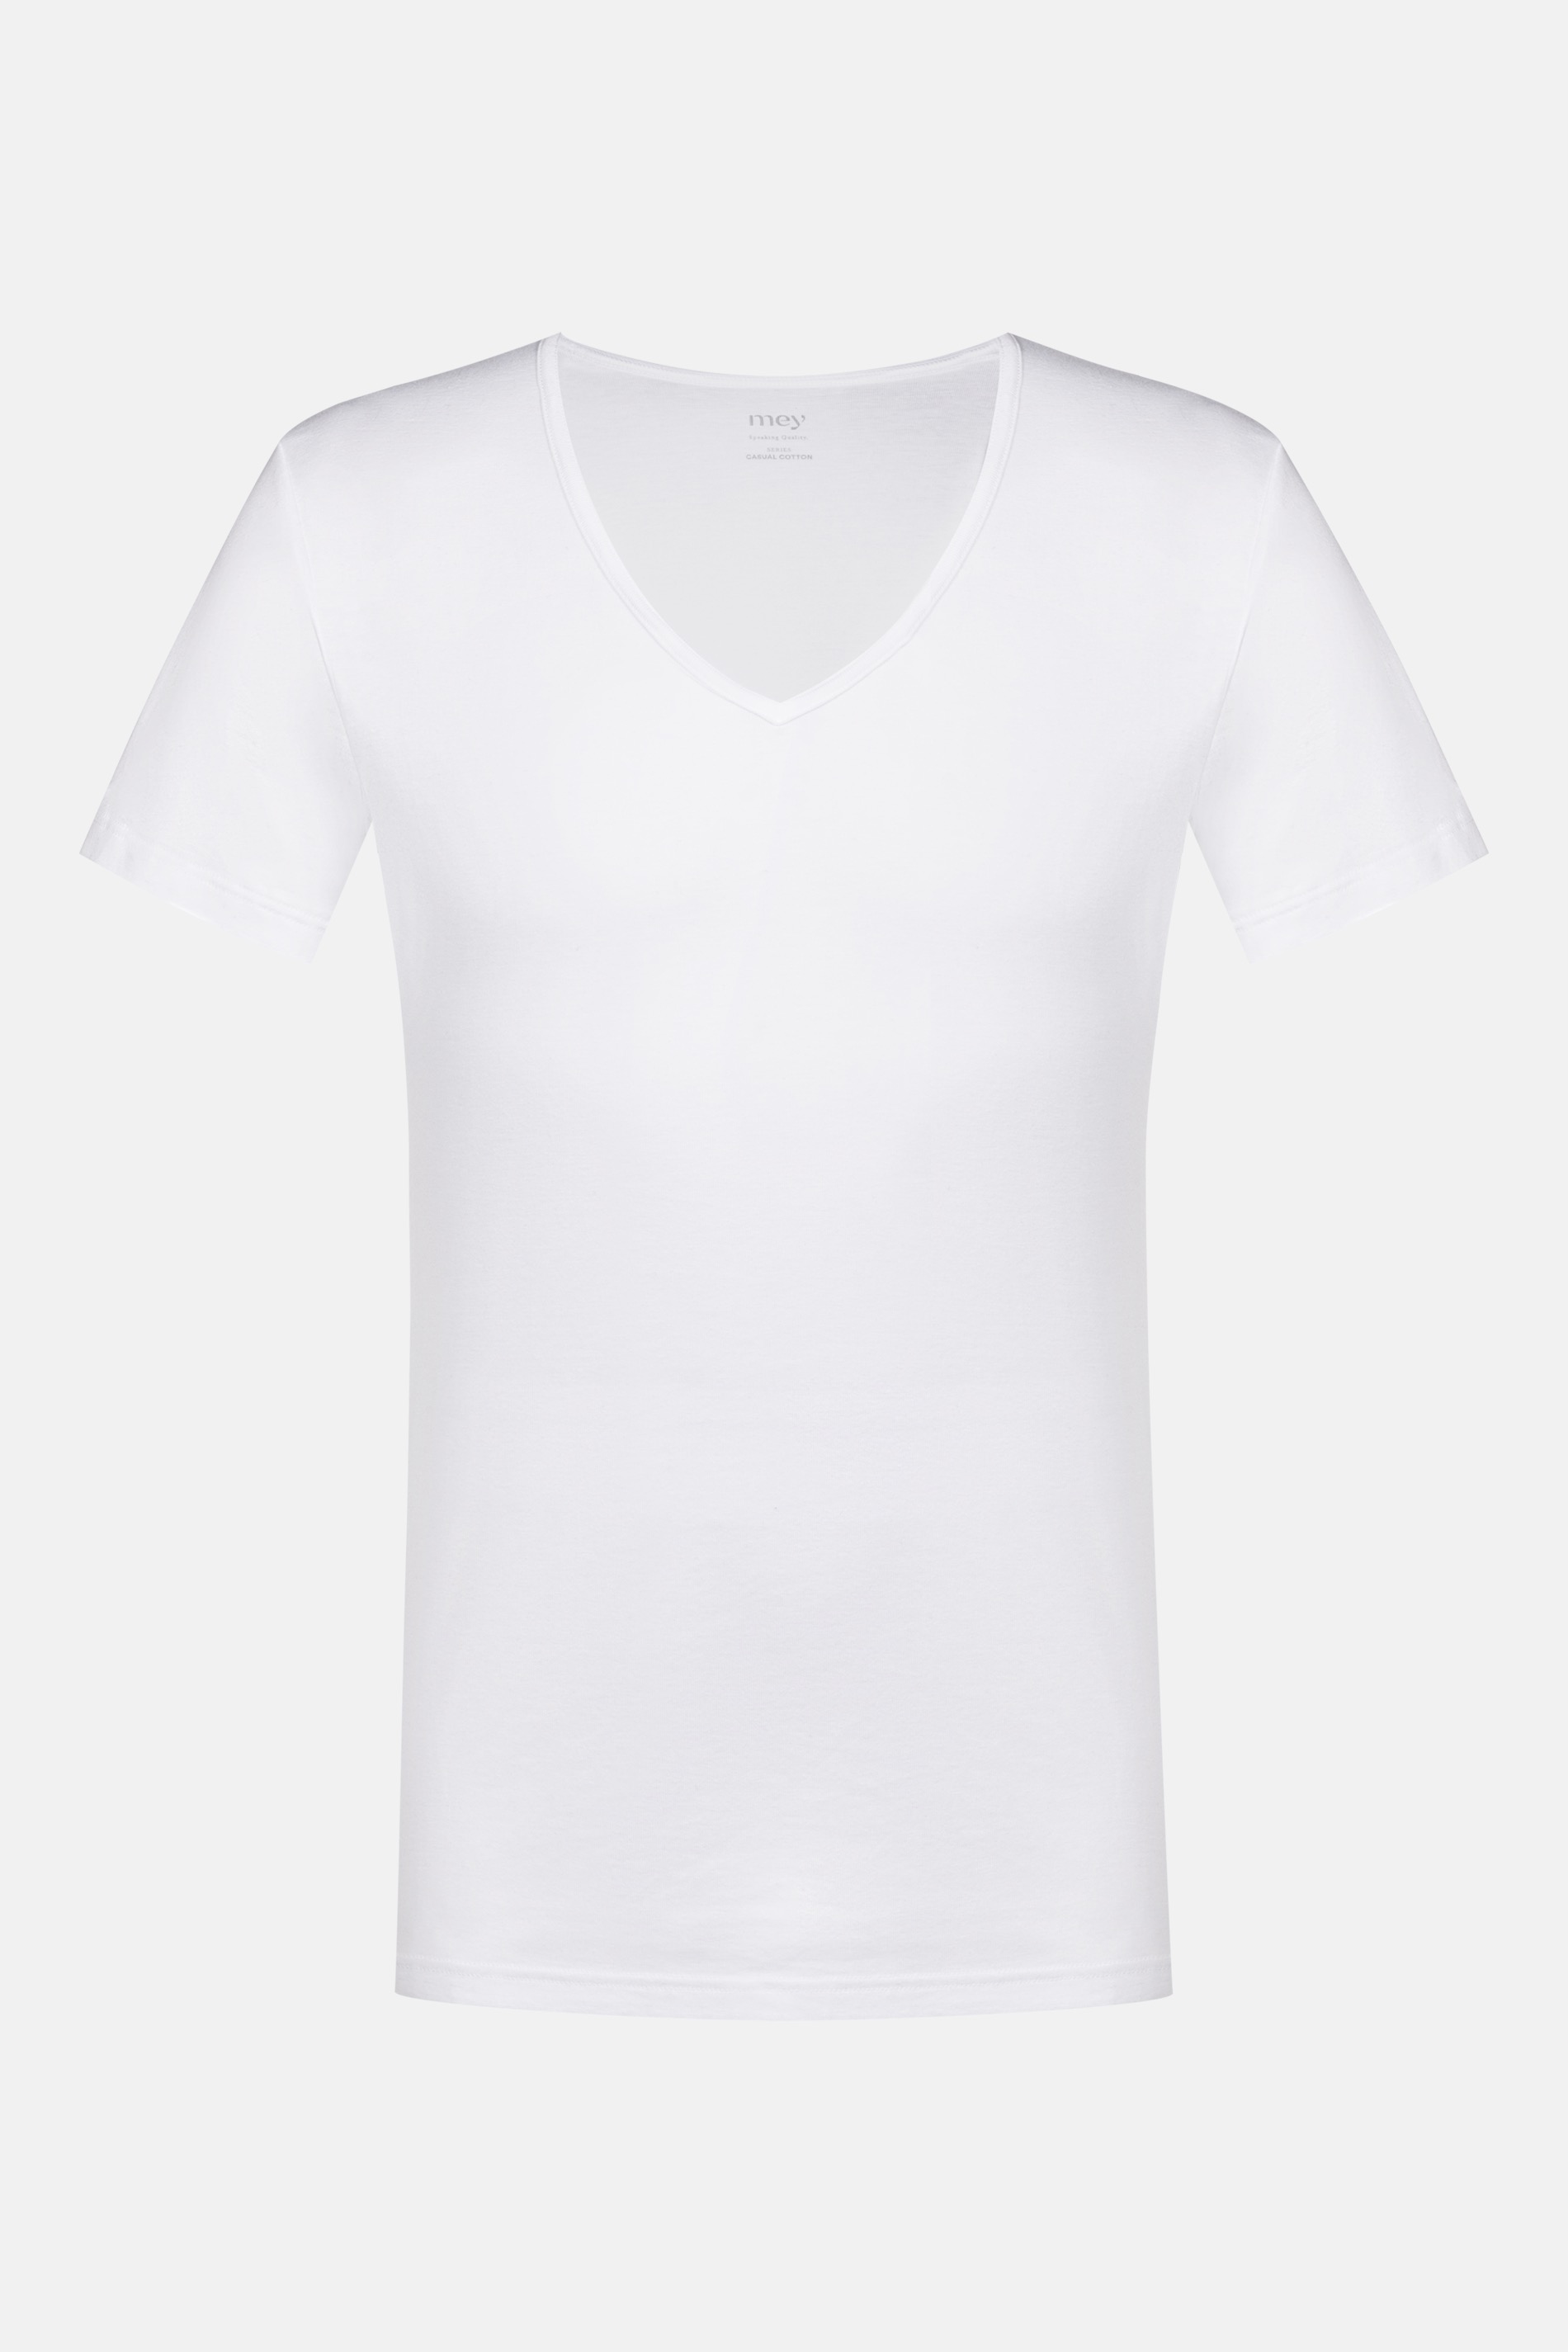 Herenshirt met ronde hals Wit Serie Casual Cotton Uitknippen | mey®